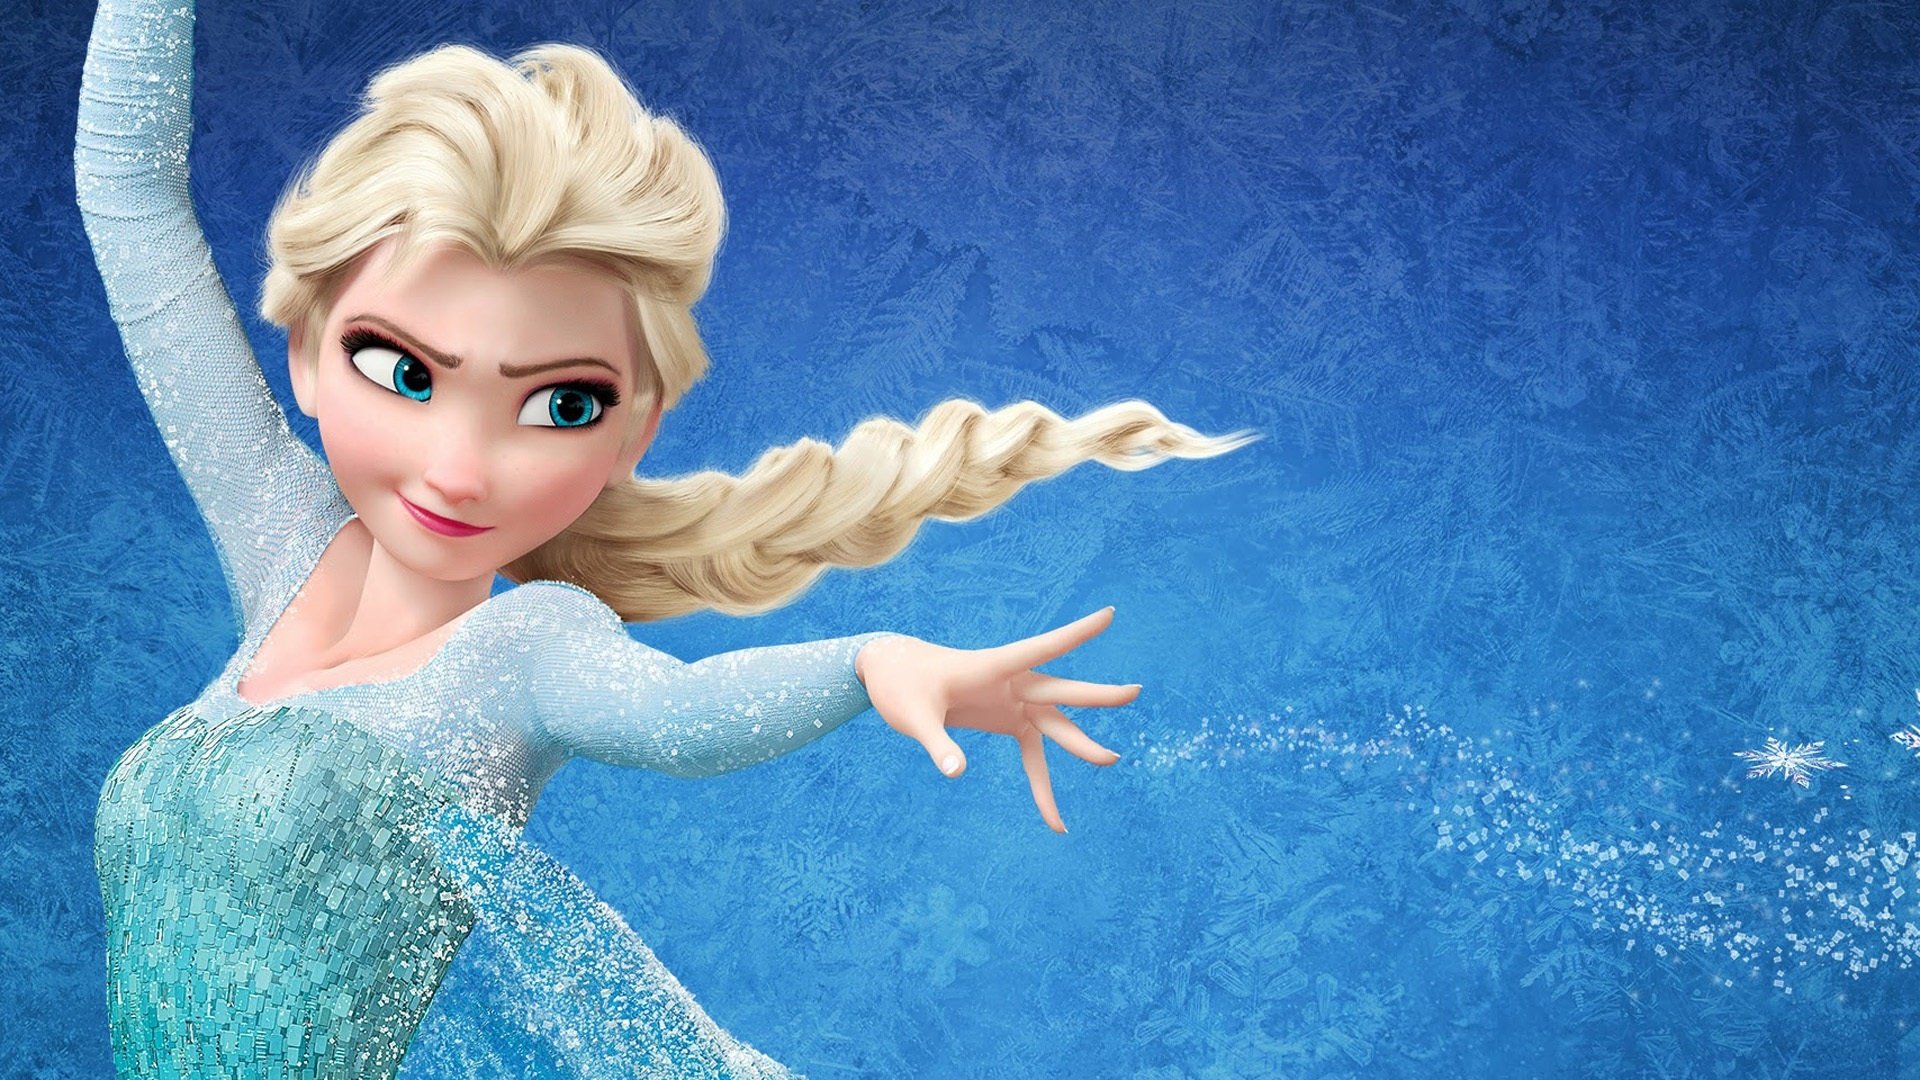 Revelan la trama original que tendría la película "Frozen": era completamente distinta